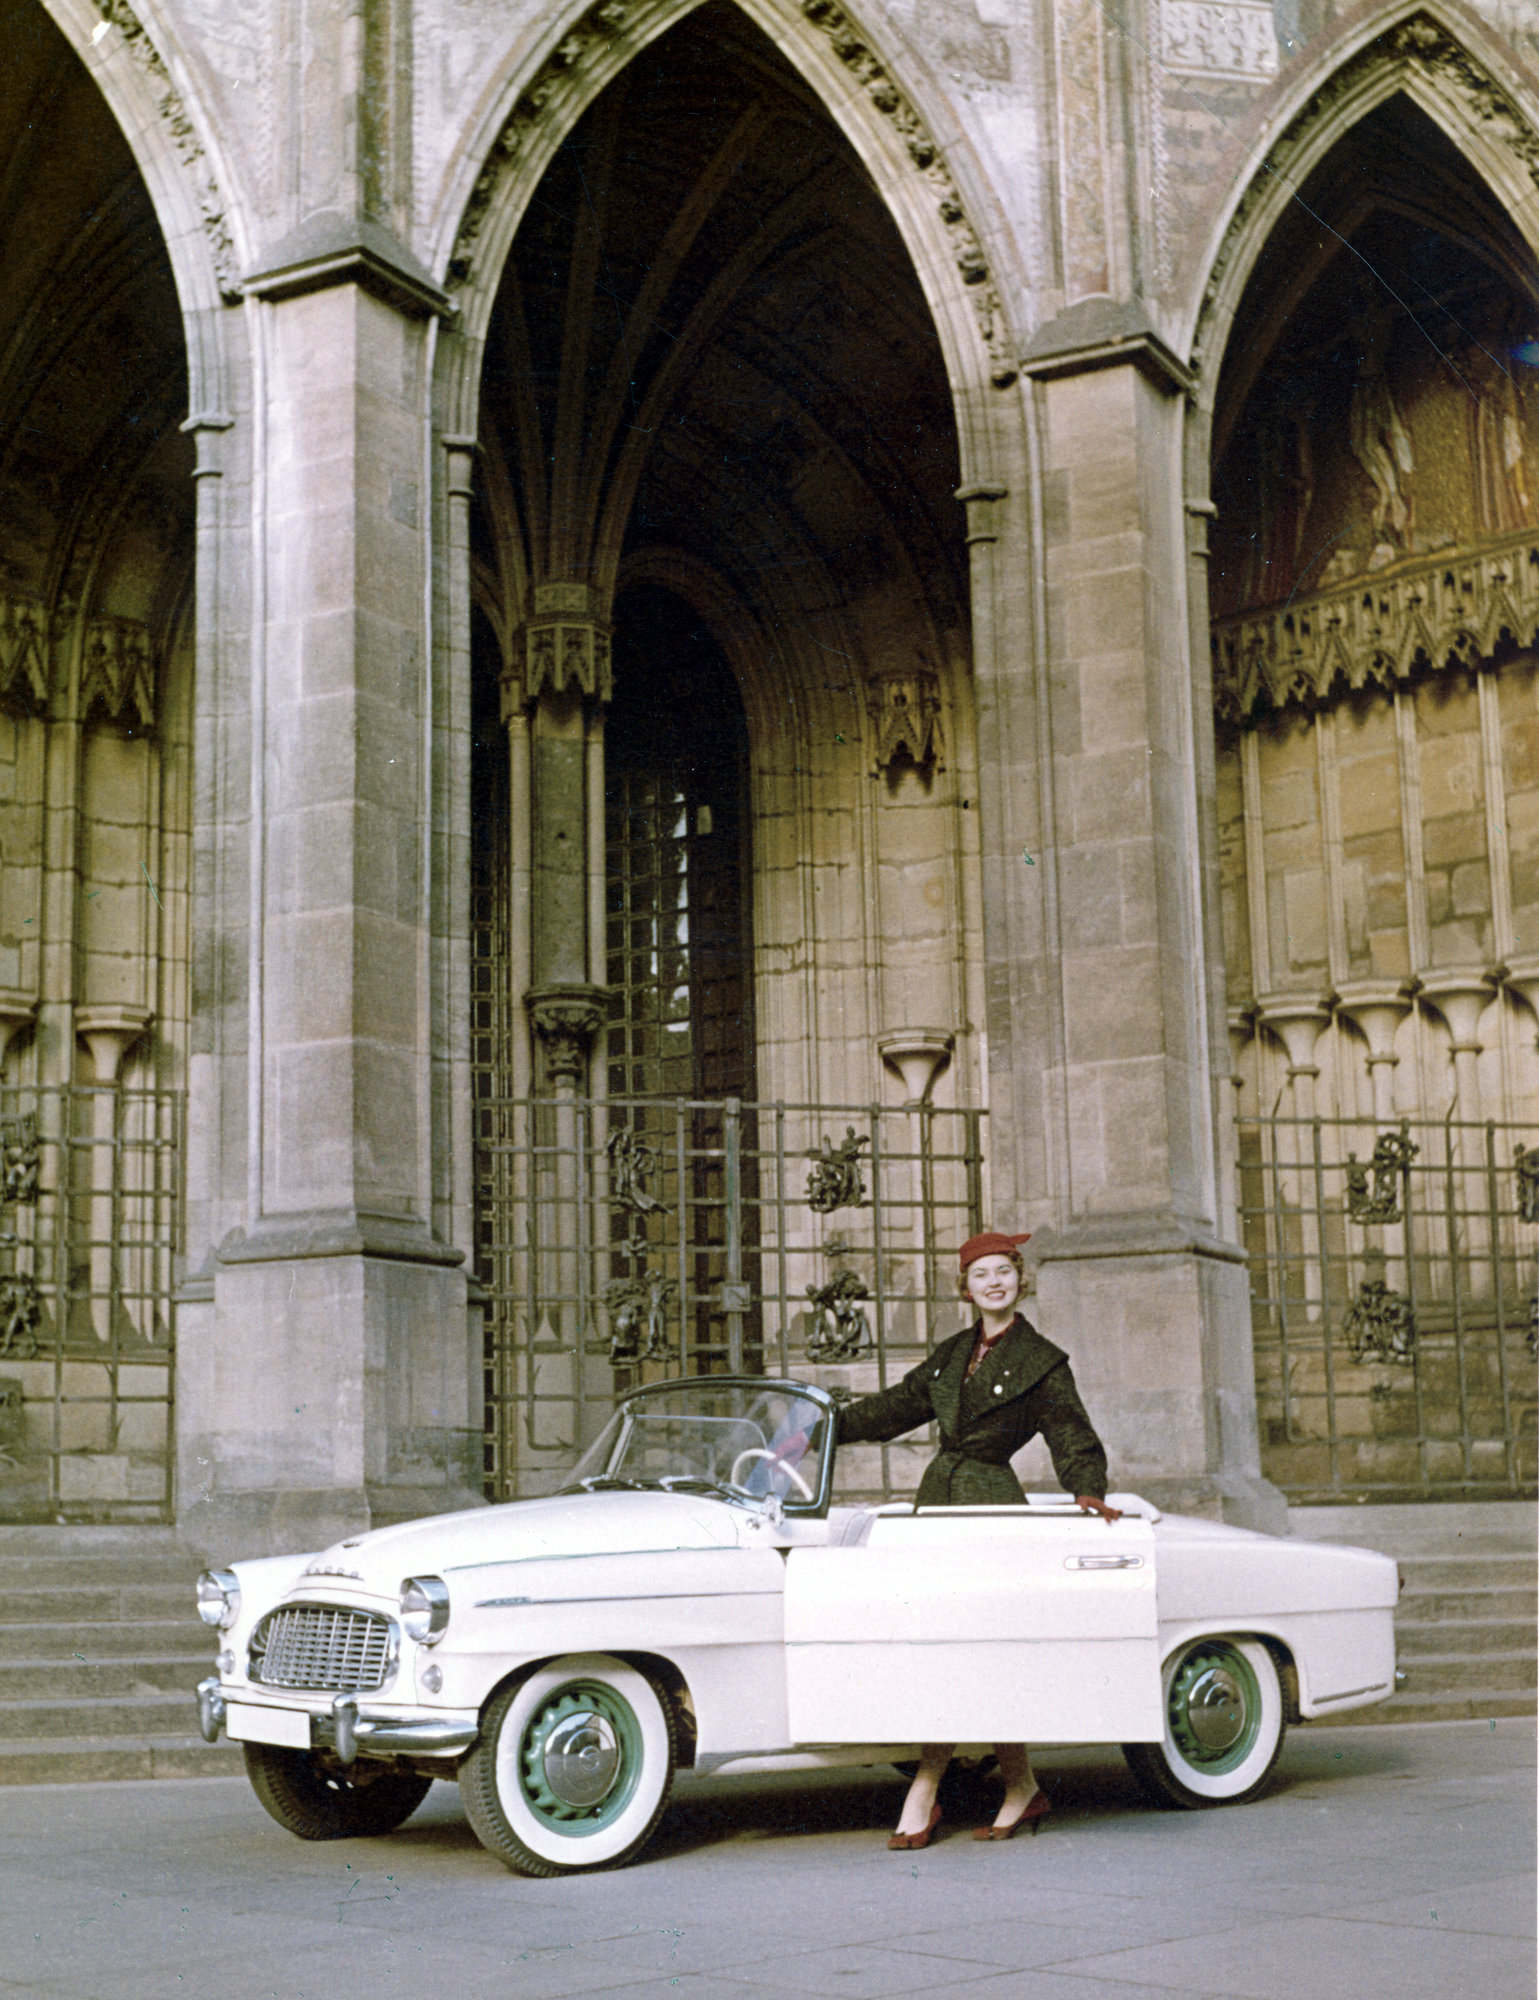 Zhruba dvě třetiny všech vyrobených vozů Škoda 450 byly dodány zákazníkům v zahraničí. Na fotografii Viléma Heckela je roadster zachycen ve společnosti Miss USA 1957 Charlotte Sheffield.